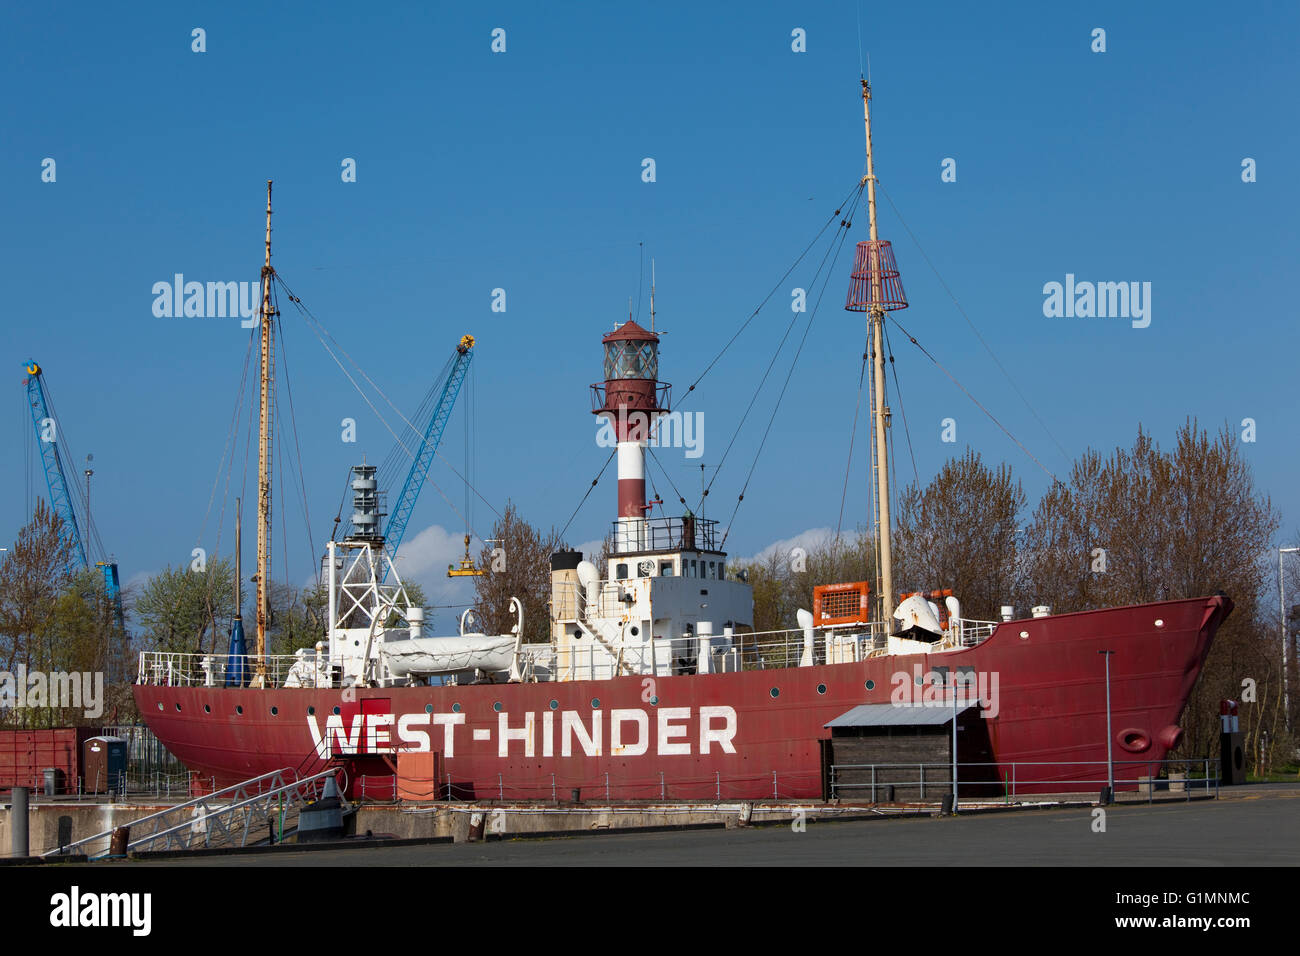 Die west-hinder II ist ein Feuerschiff 1950 Konstrukt in Oostende. Es ist in der plezierhaven von Zeebrugge, Belgien. Foto V.D. Stockfoto